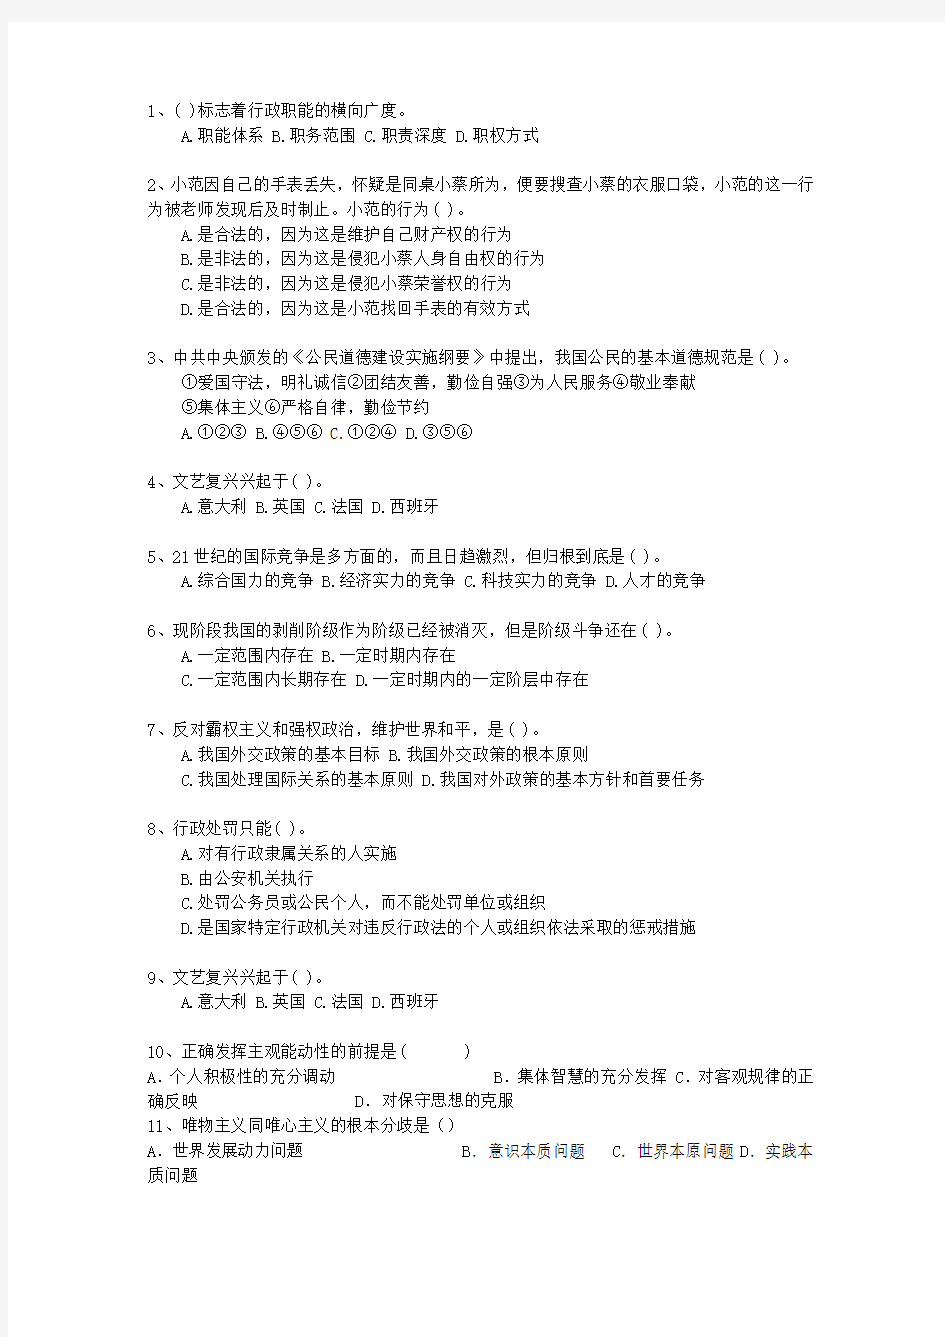 2012甘肃省教师招聘考试公共基础知识考试重点和考试技巧